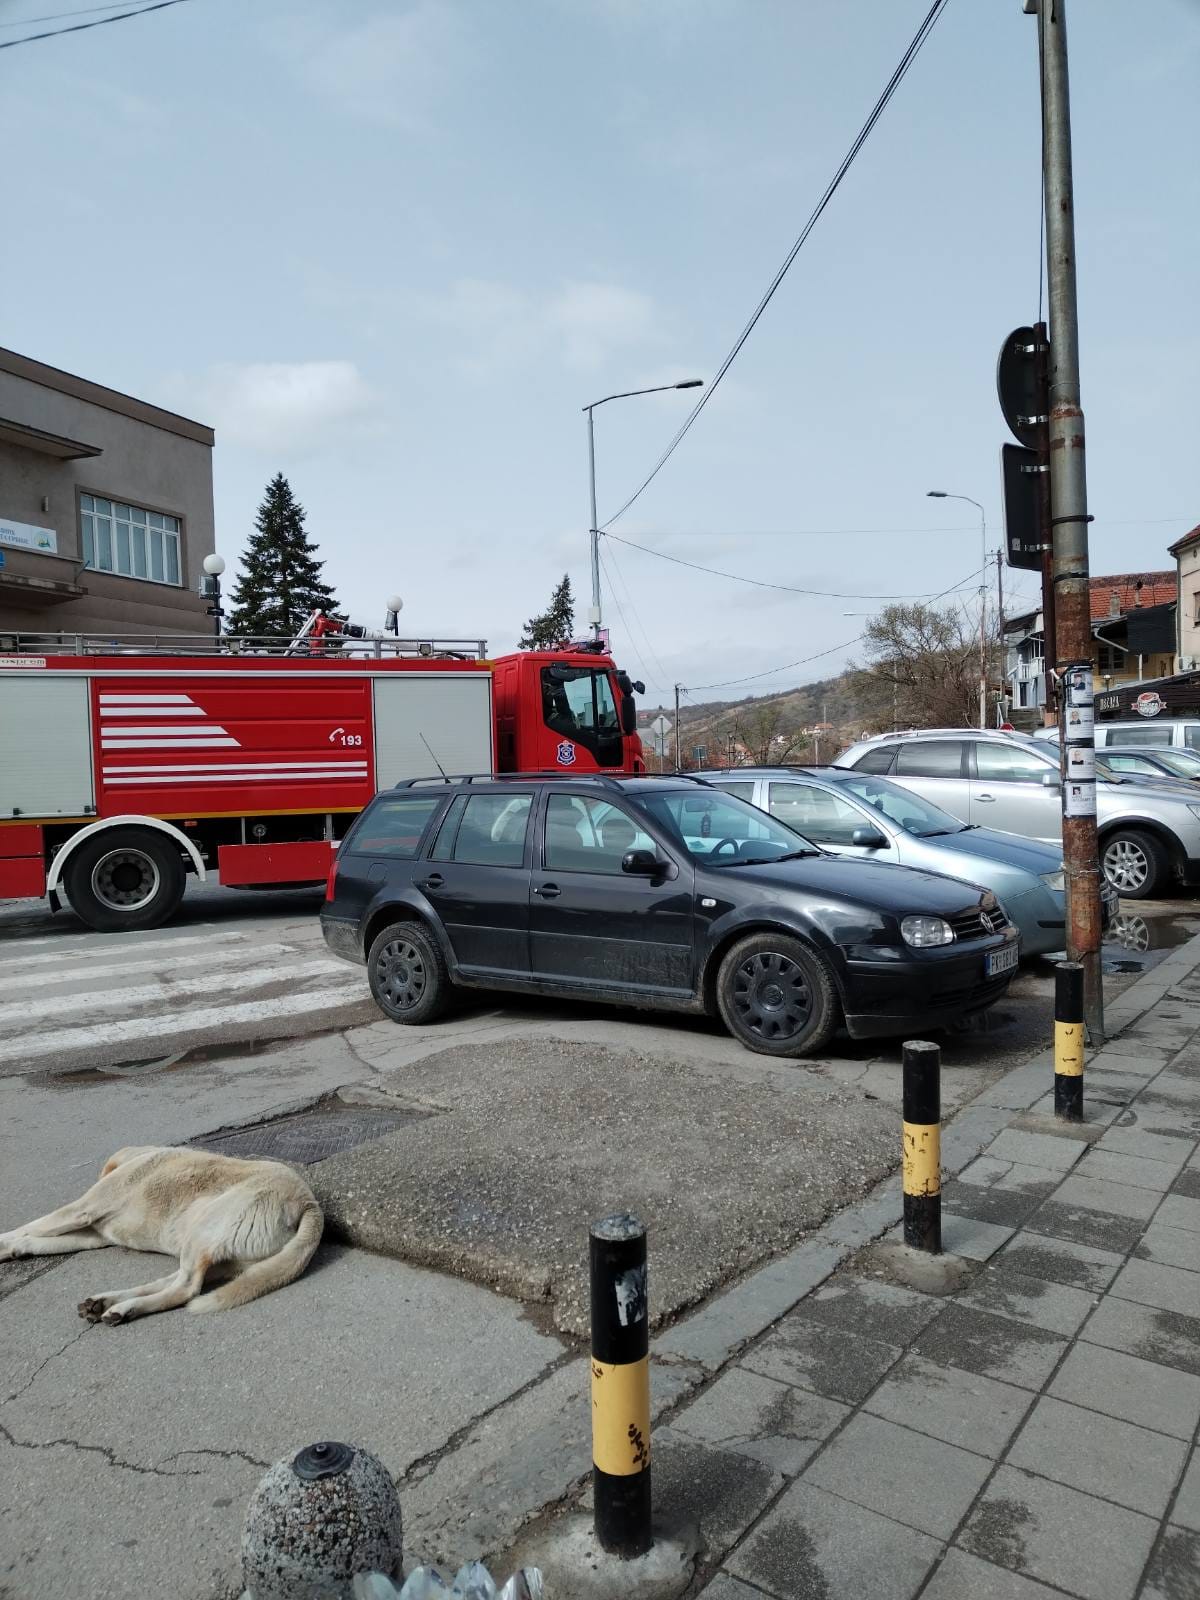 Zbog parkiranog vozila, vatrogasci nisu mogli da priđu